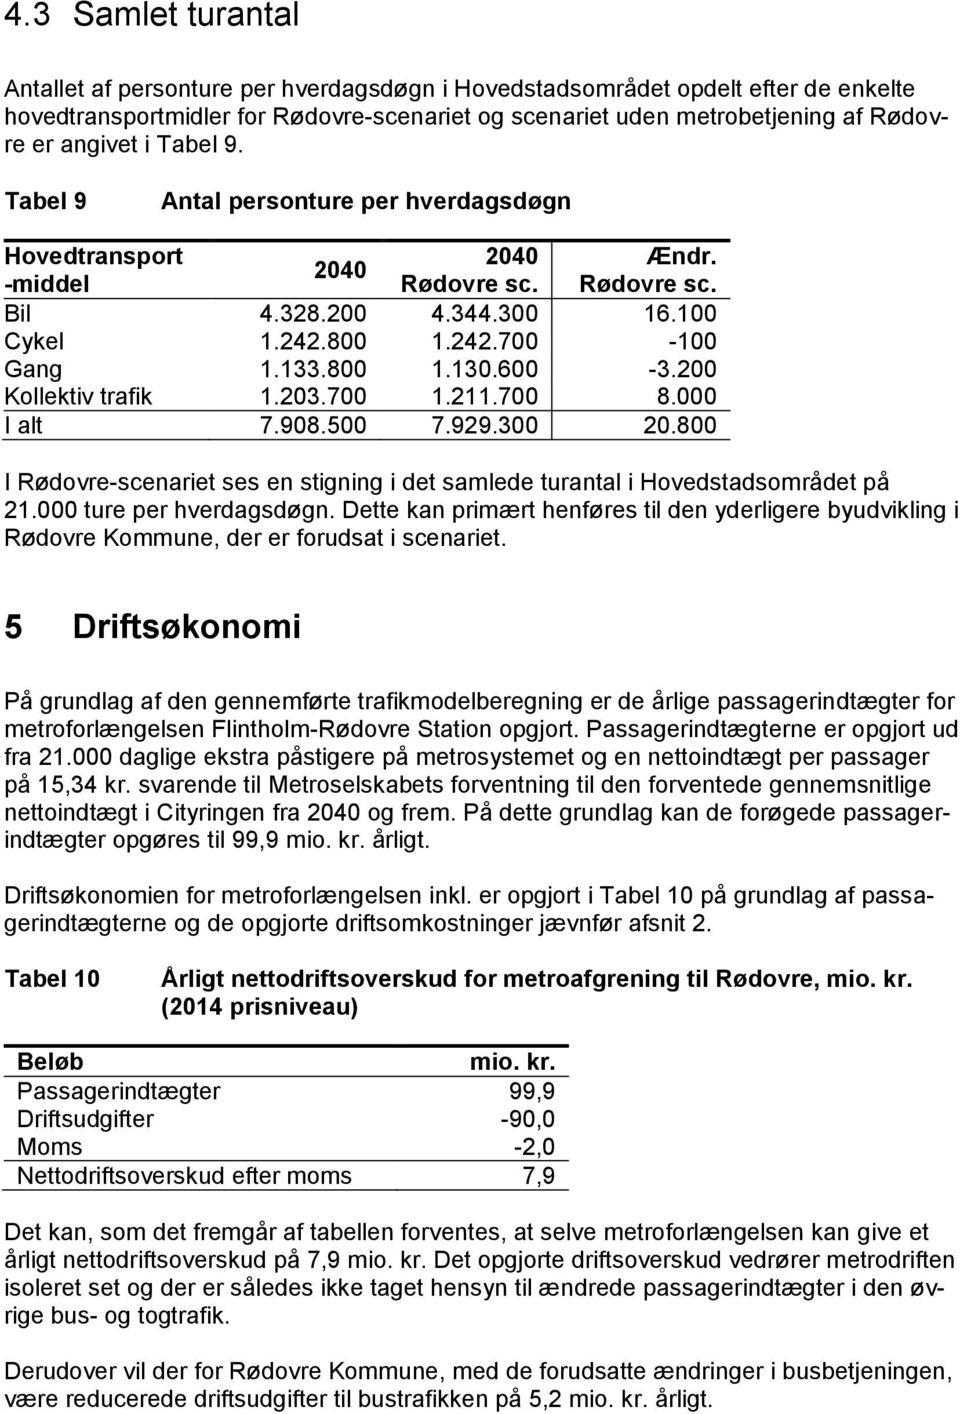 800 1.130.600-3.200 Kollektiv trafik 1.203.700 1.211.700 8.000 I alt 7.908.500 7.929.300 20.800 I Rødovre-scenariet ses en stigning i det samlede turantal i Hovedstadsområdet på 21.